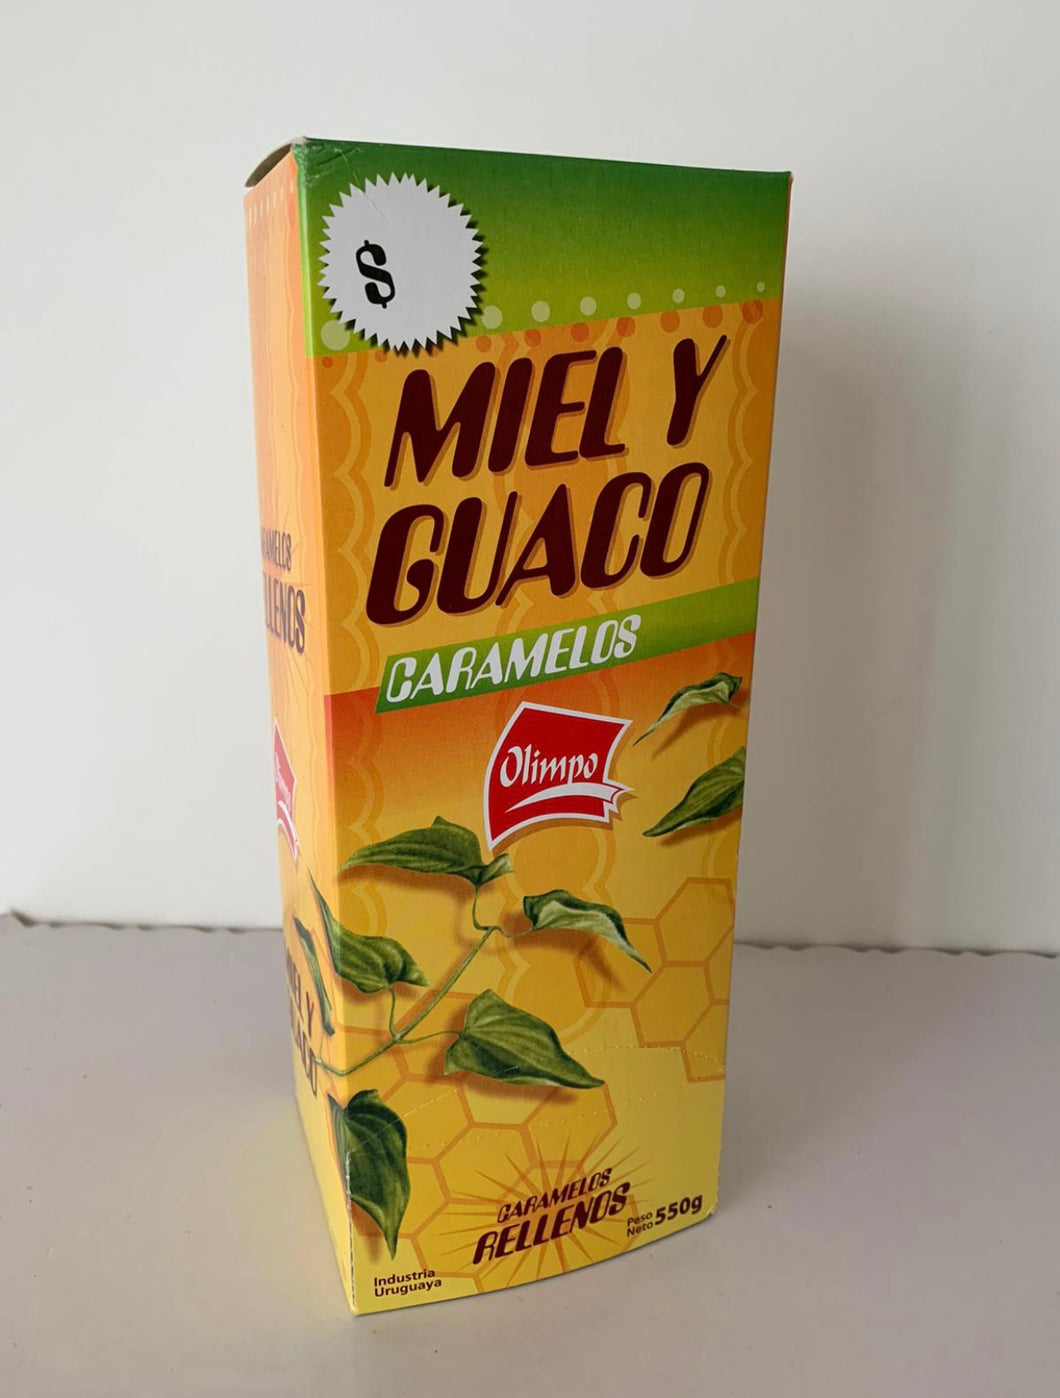 OLIMPO - Caramelos de Miel y Guaco 550g